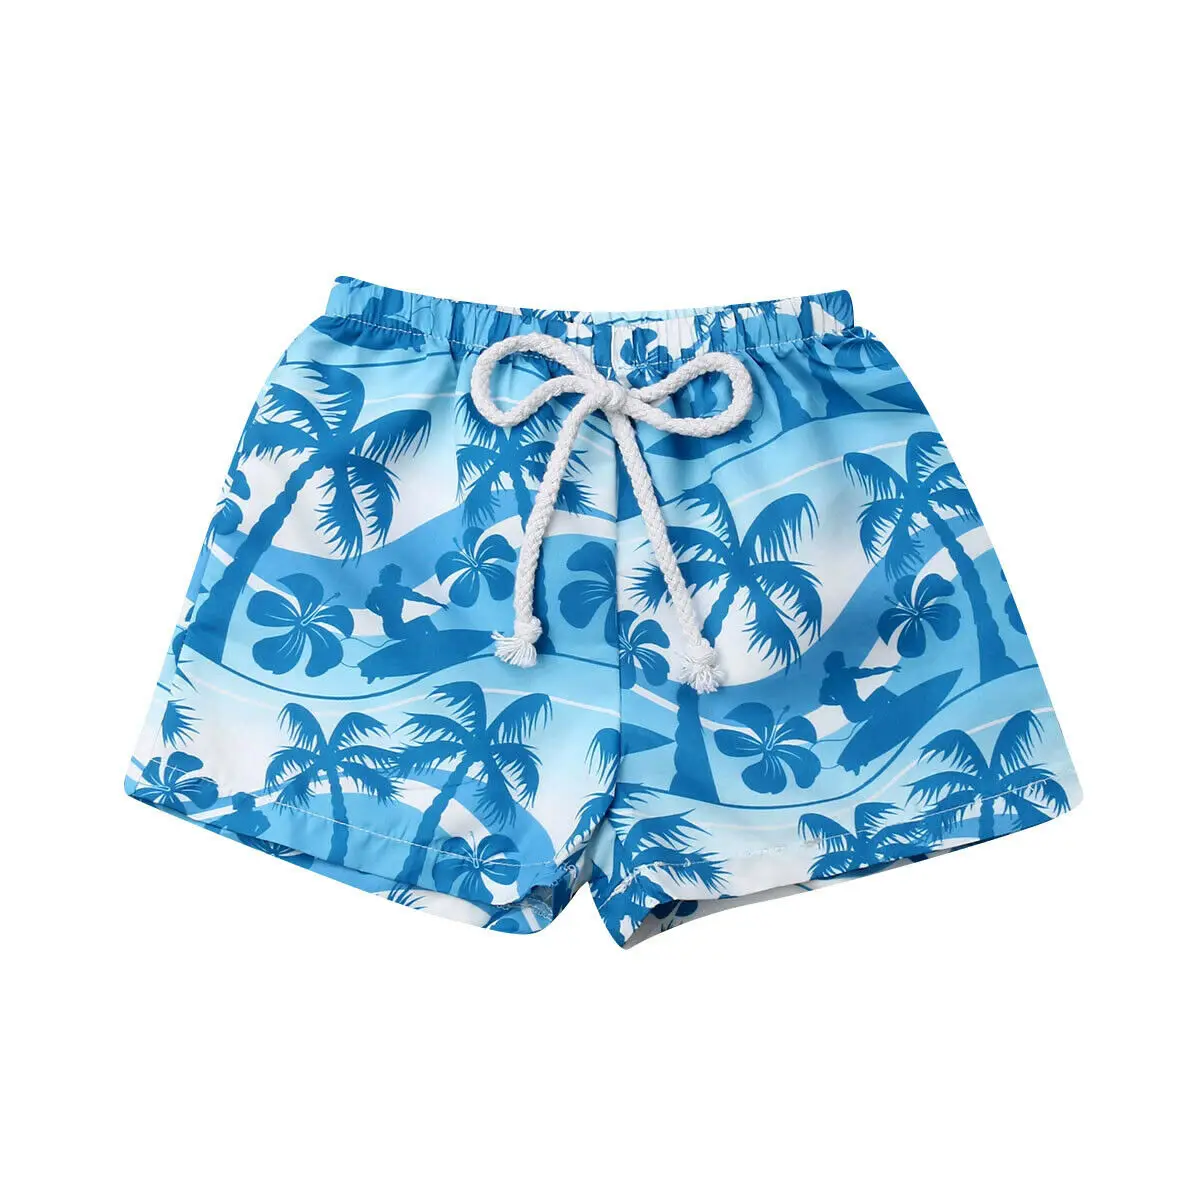 Гавайские плавательные пляжные шорты для маленьких мальчиков, короткий чемодан с эластичной резинкой на талии, летний праздничный купальный костюм для мальчика, пляжная одежда, пляжные шорты - Цвет: Синий